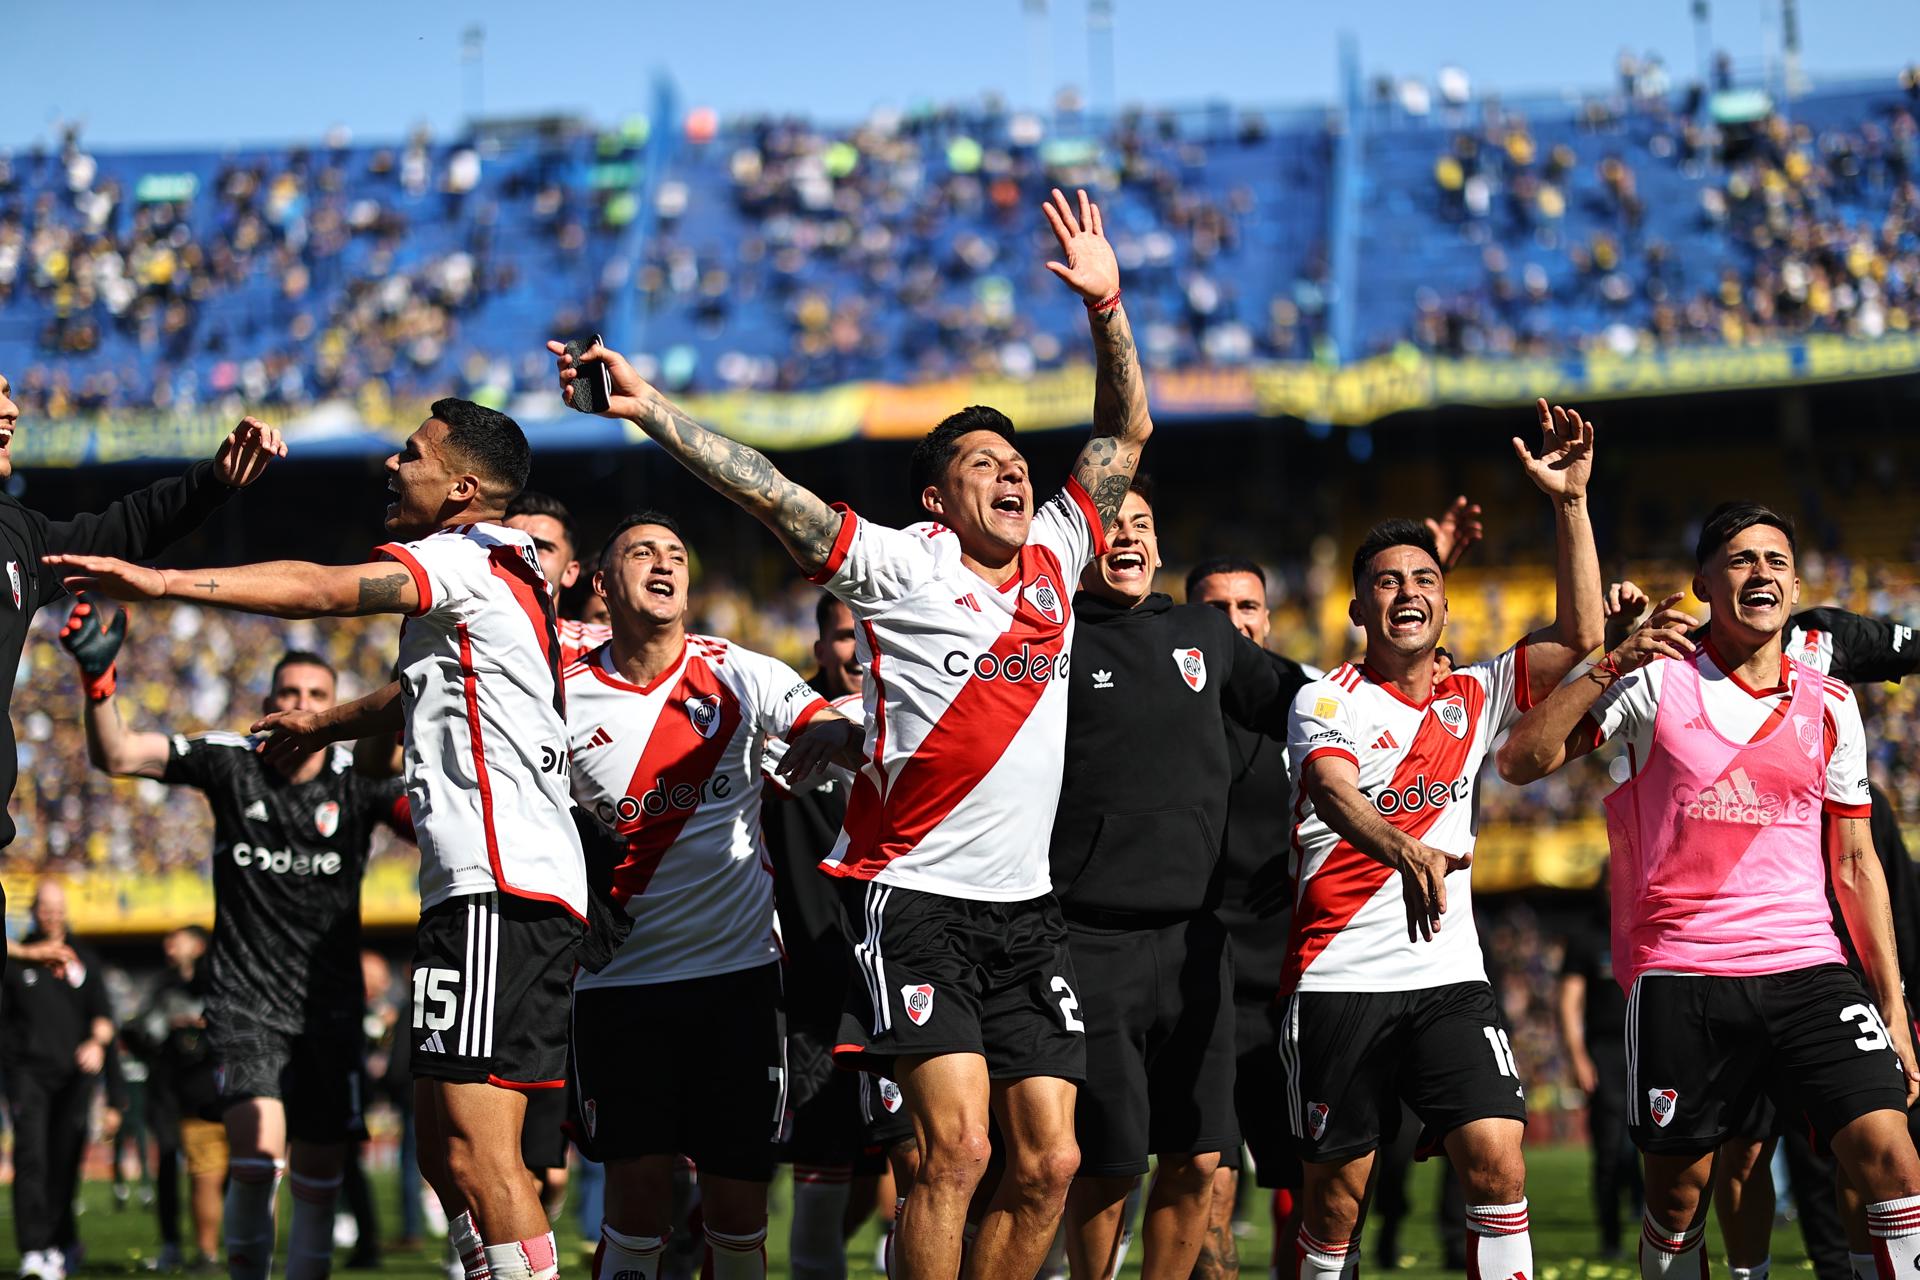 Jugadores de River Plate celebran hoy la victoria contra Boca Juniors, tras el final de un partido por la Primera División del fútbol argentino, en el estadio La Bombonera en Buenos Aires (Argentina). EFE/ Juan Ignacio Roncoroni